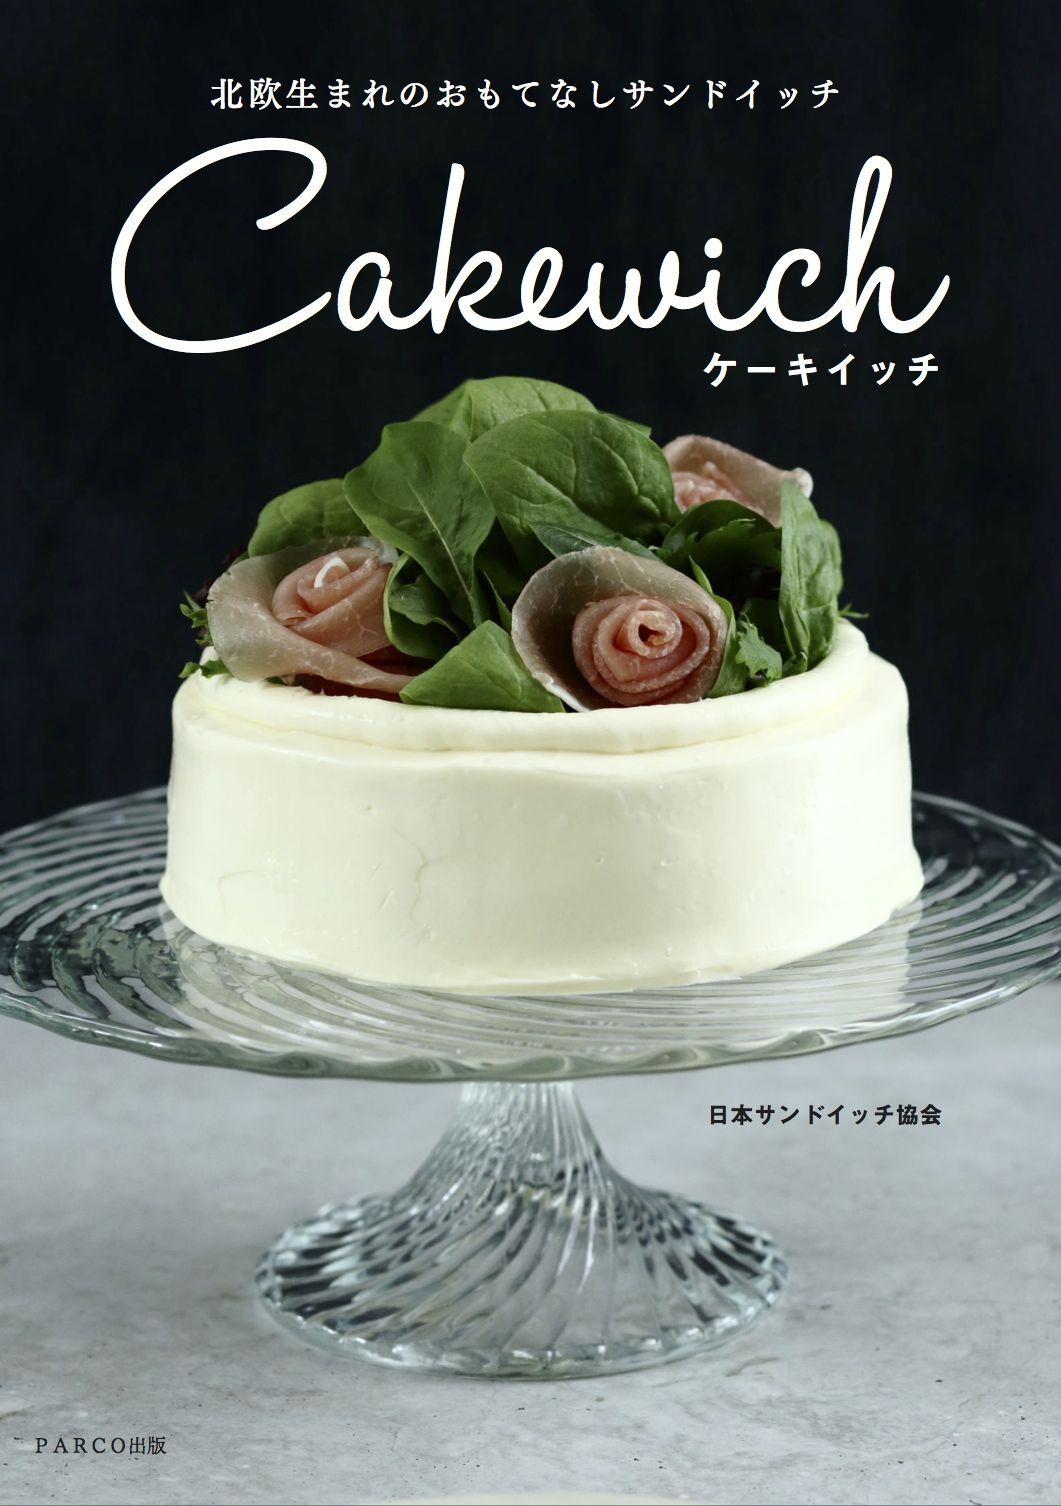 新刊 デコるサンドイッチ ケーキイッチ 初のレシピ本が10月15日発売 Parco出版のプレスリリース